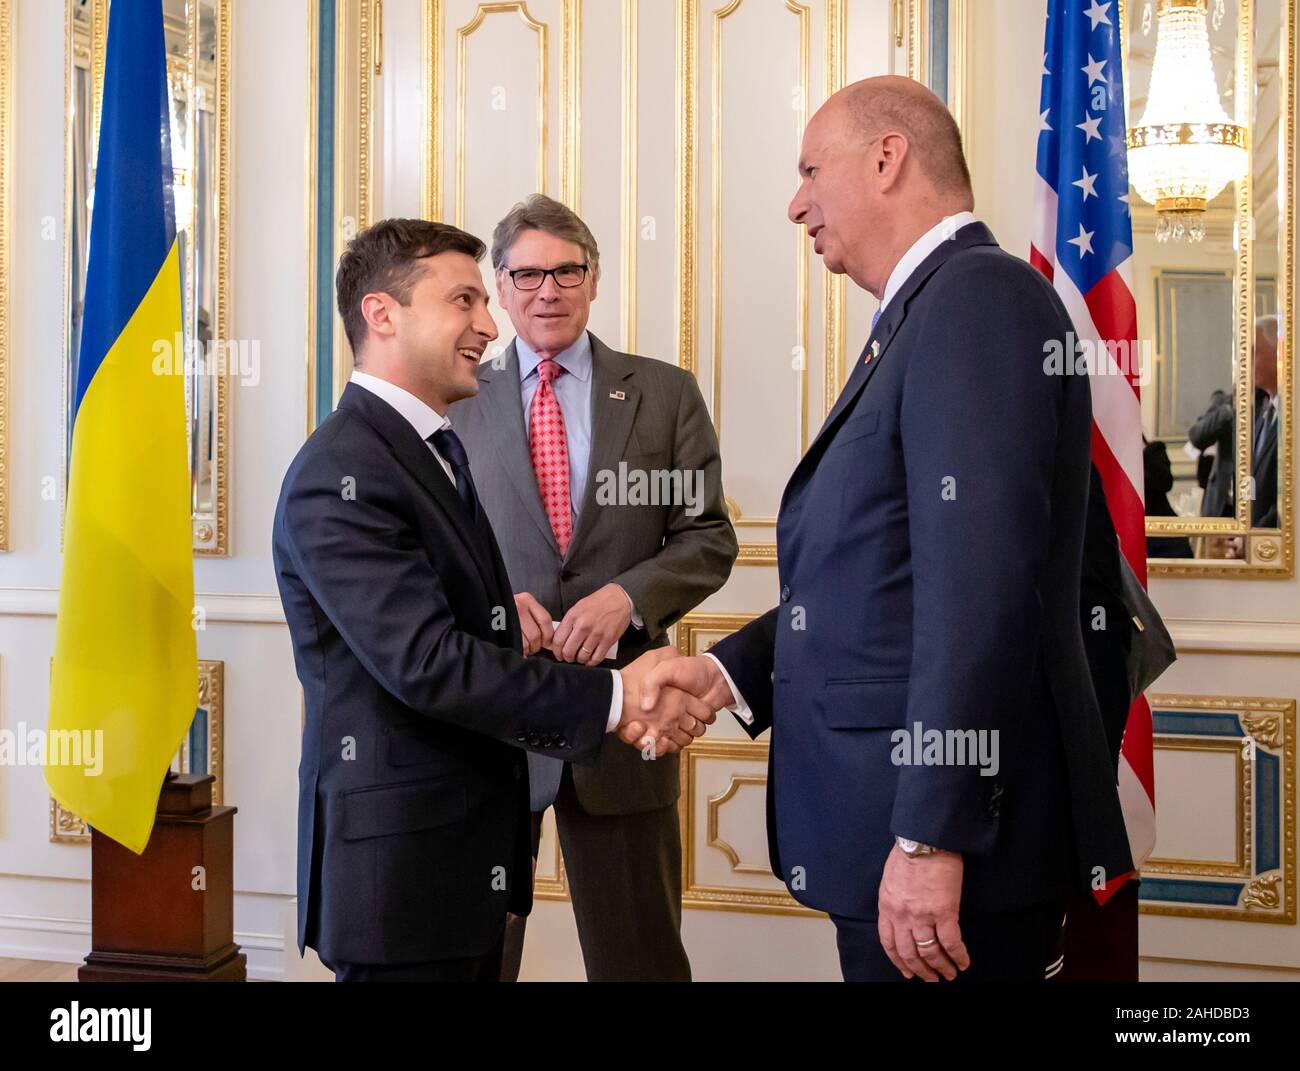 Us-Energieminister Rick Perry, Mitte, stellt der Präsident der Ukraine Volodymyr Zelensky Amb. Gordon Sondland während einer Sitzung im Präsidentenpalast - 20. Mai 2019 in Kiew, Ukraine. Stockfoto